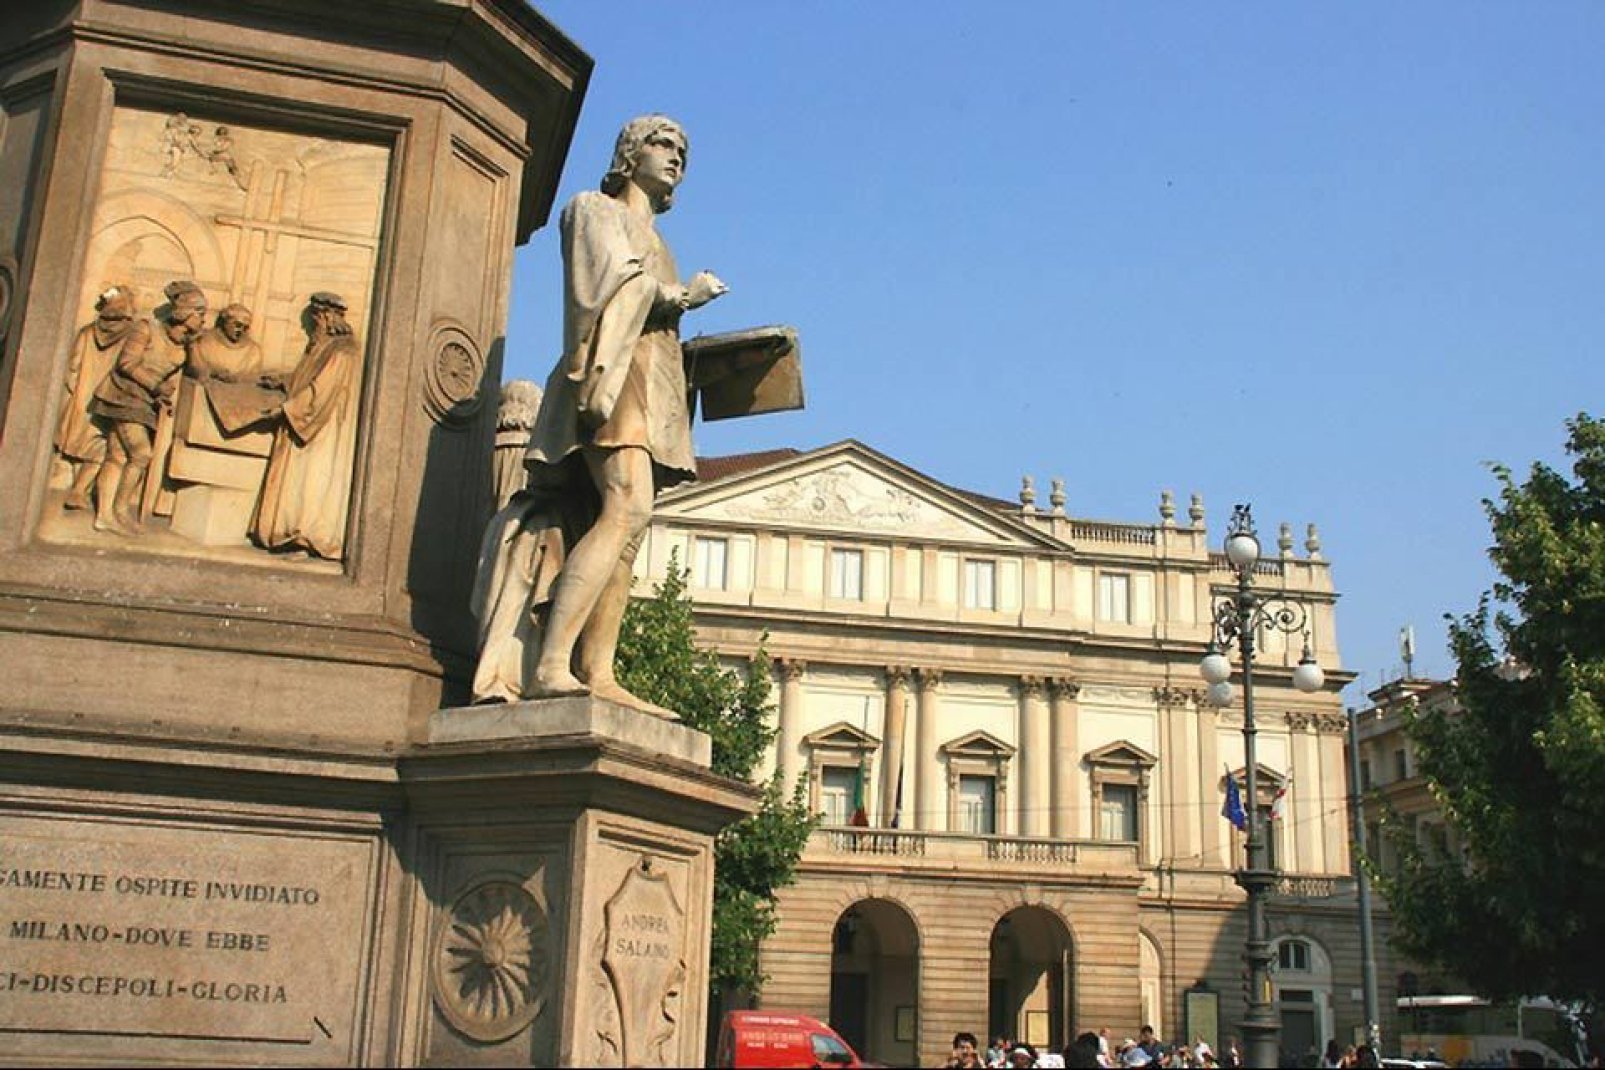 Il Teatro alla Scala di Milano, tempio della lirica, è forse l'istituzione culturale più ammirata del capoluogo lombardo